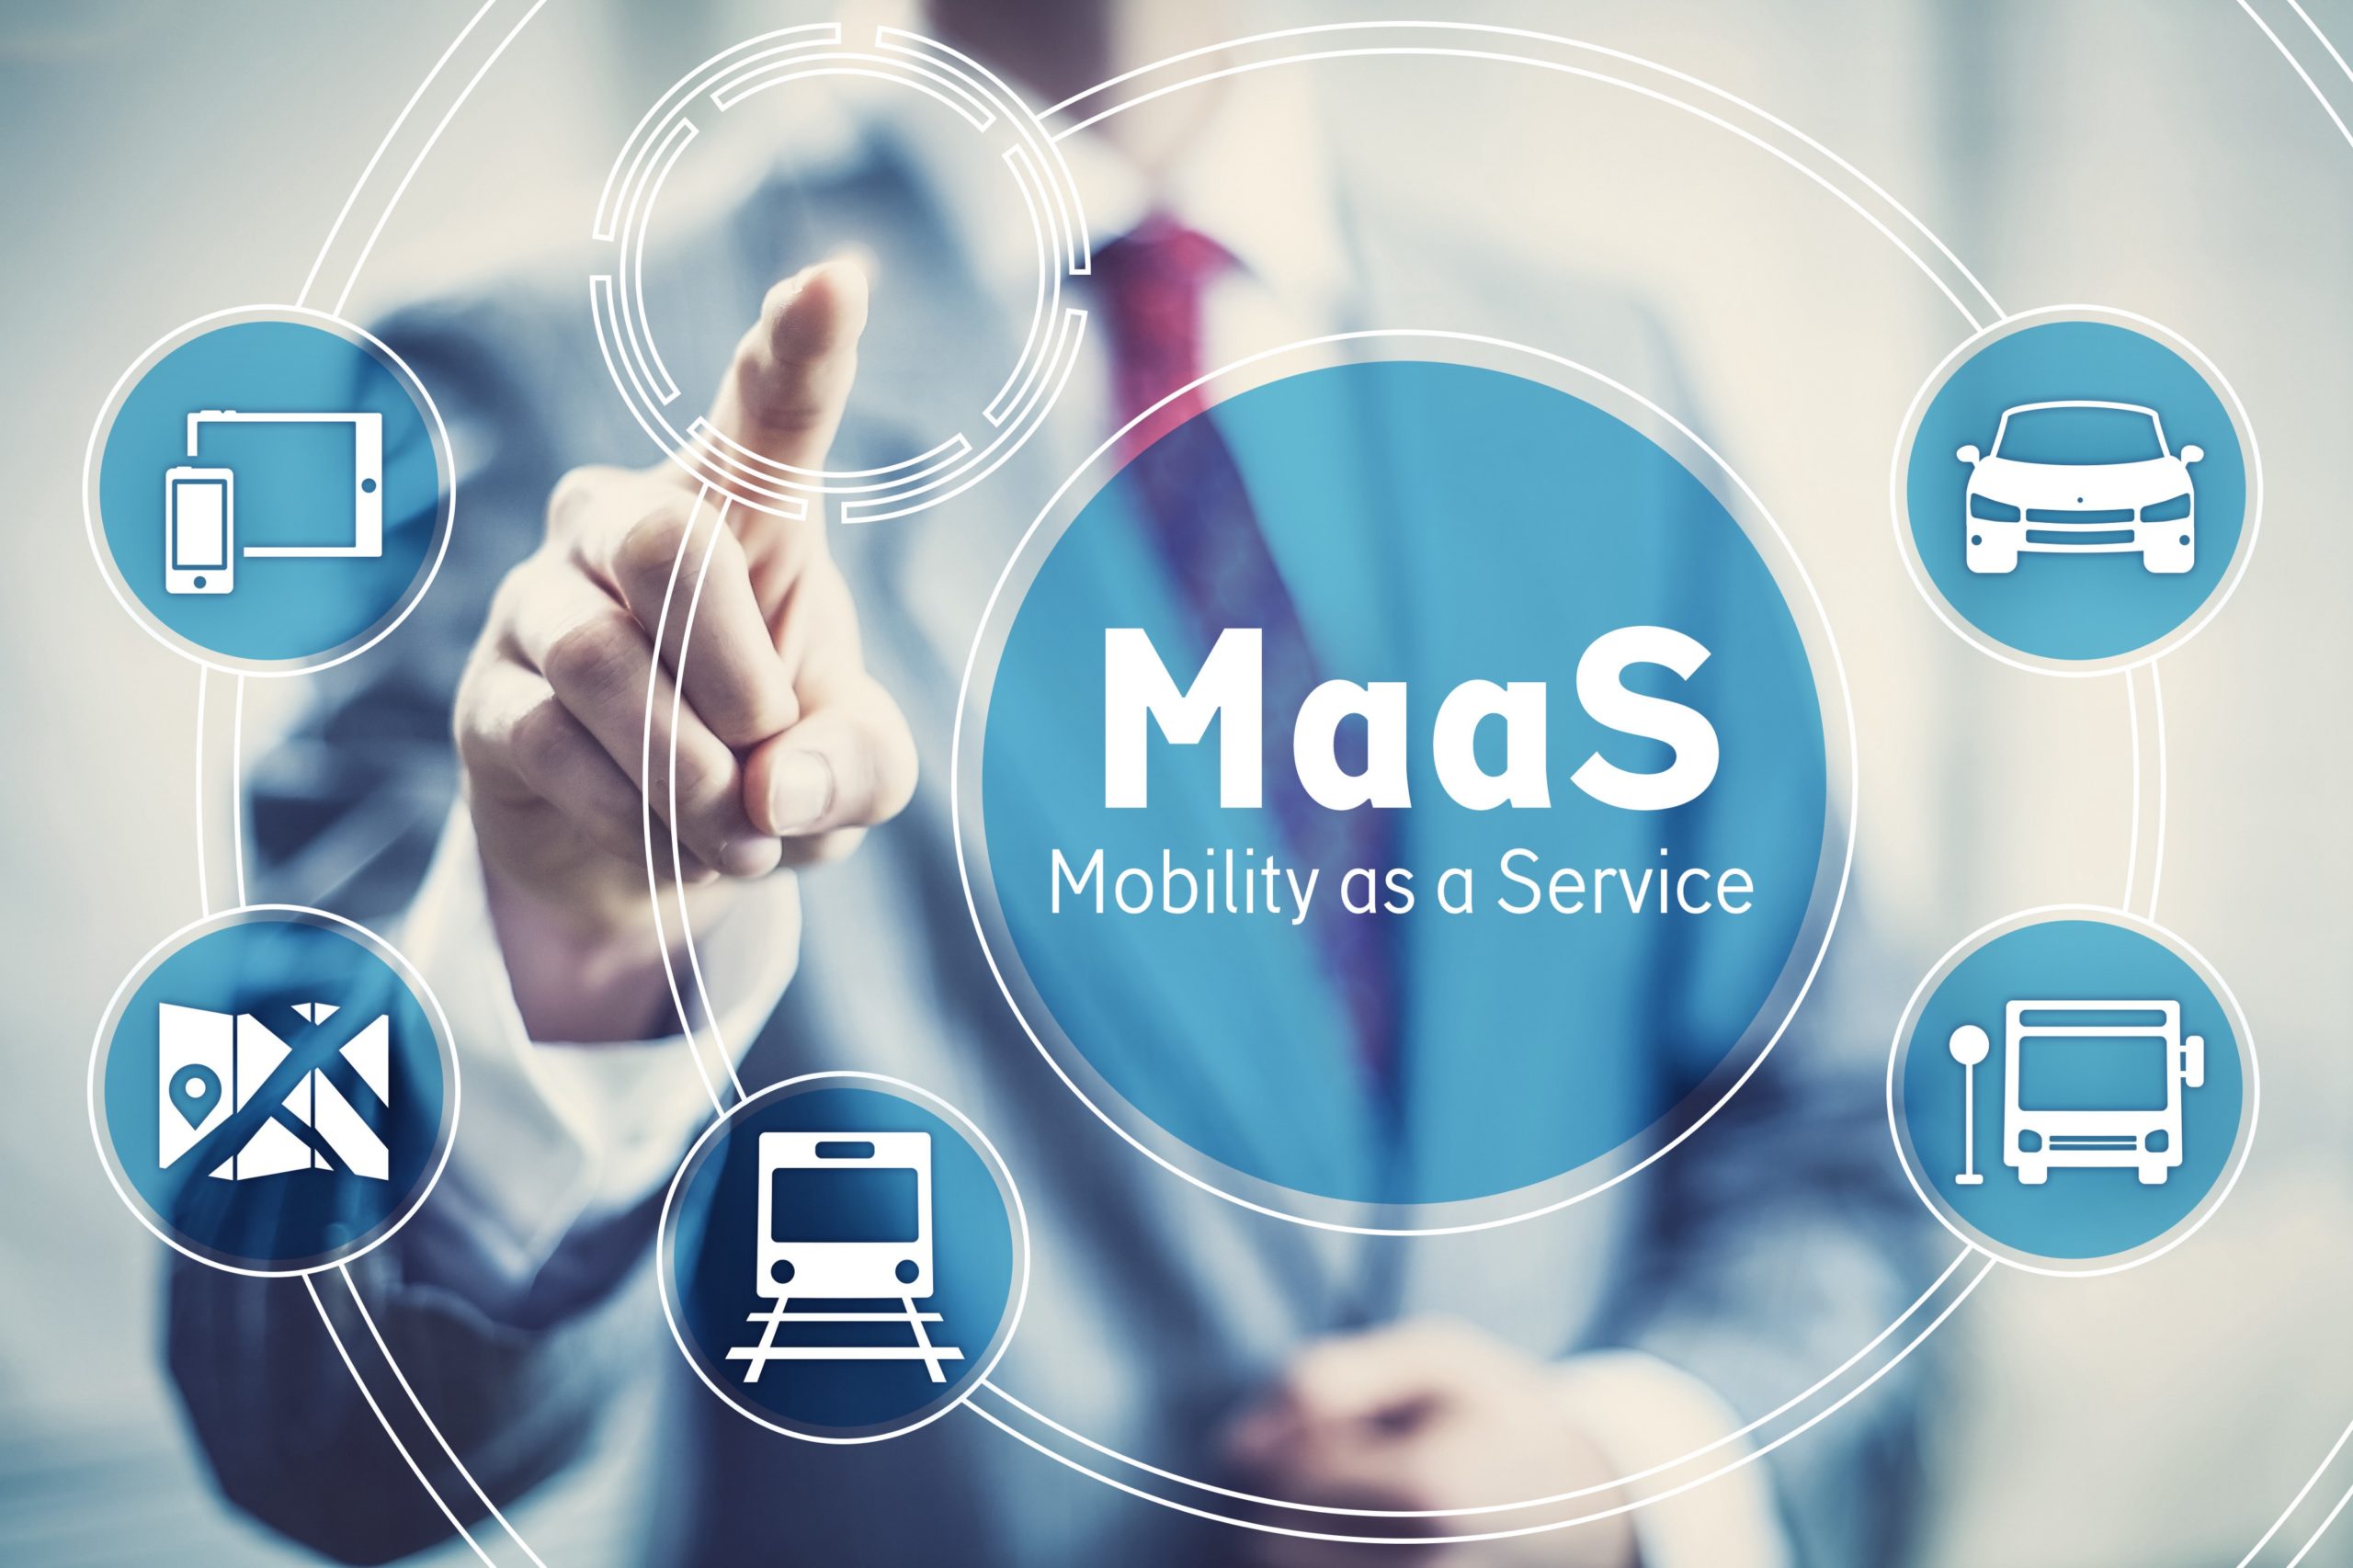 Het woon-werkverkeer per auto kan sterk worden verminderd door alternatieven zoals MaaS